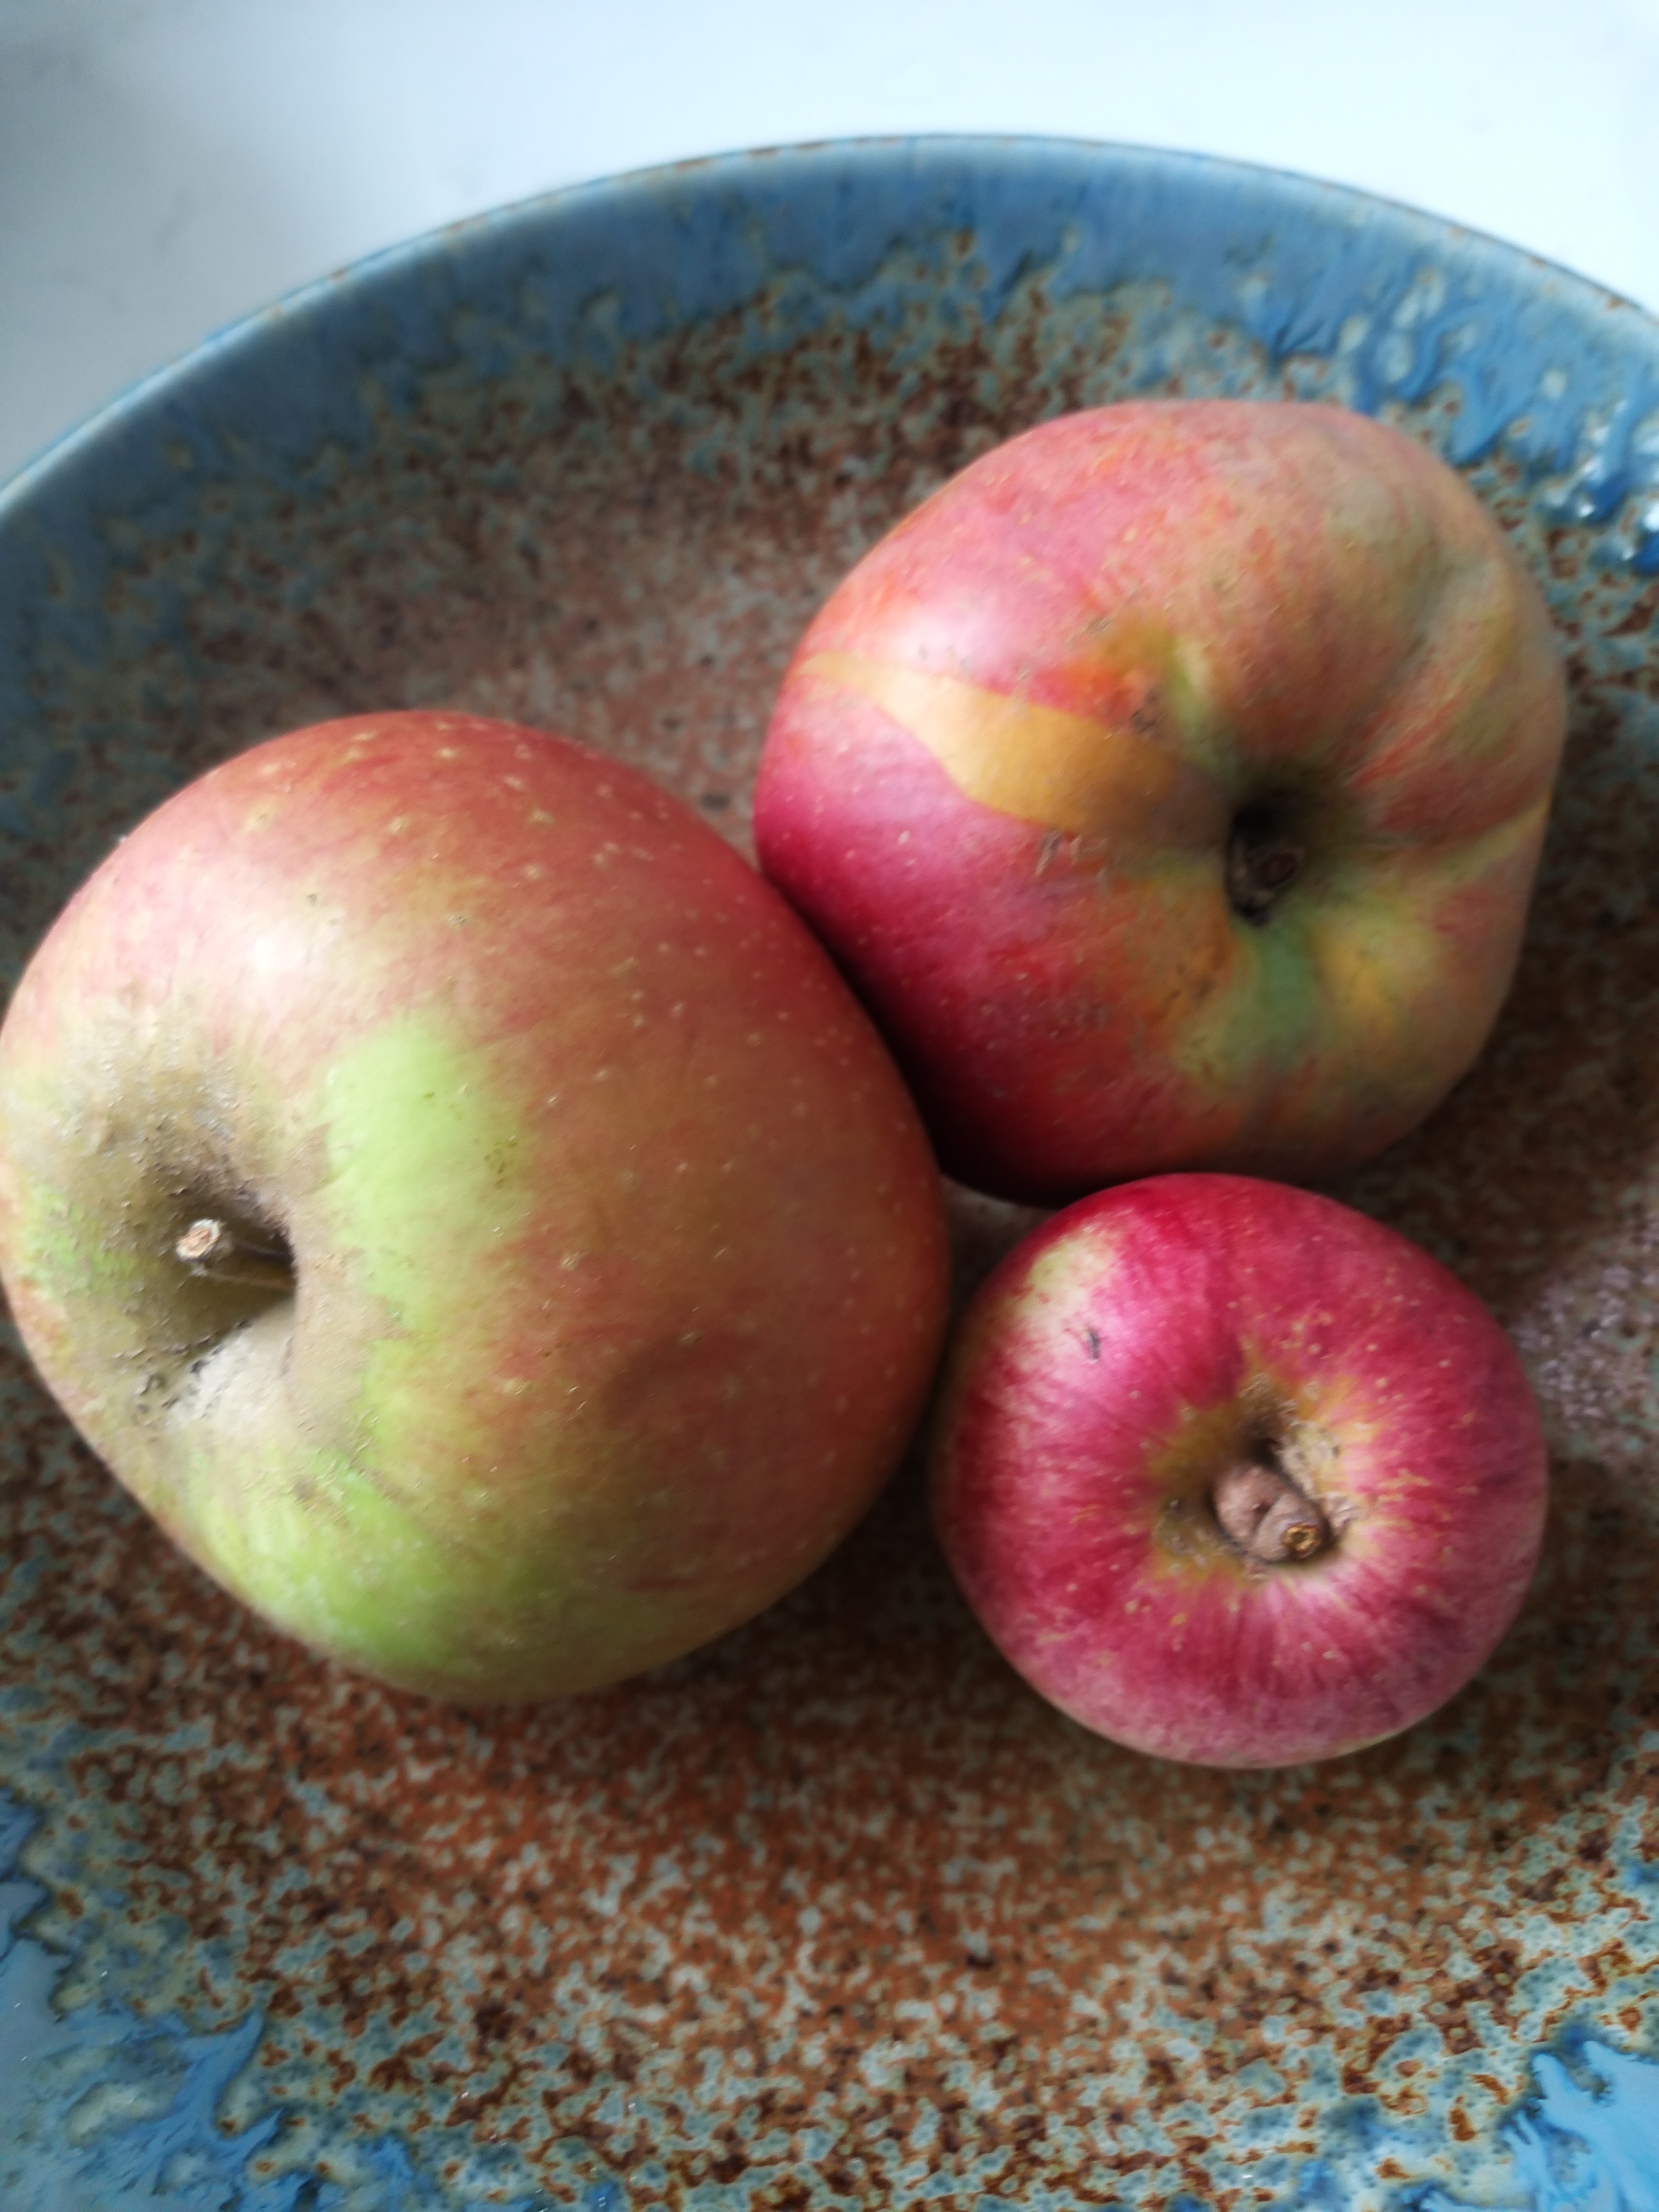 Brogdale apples